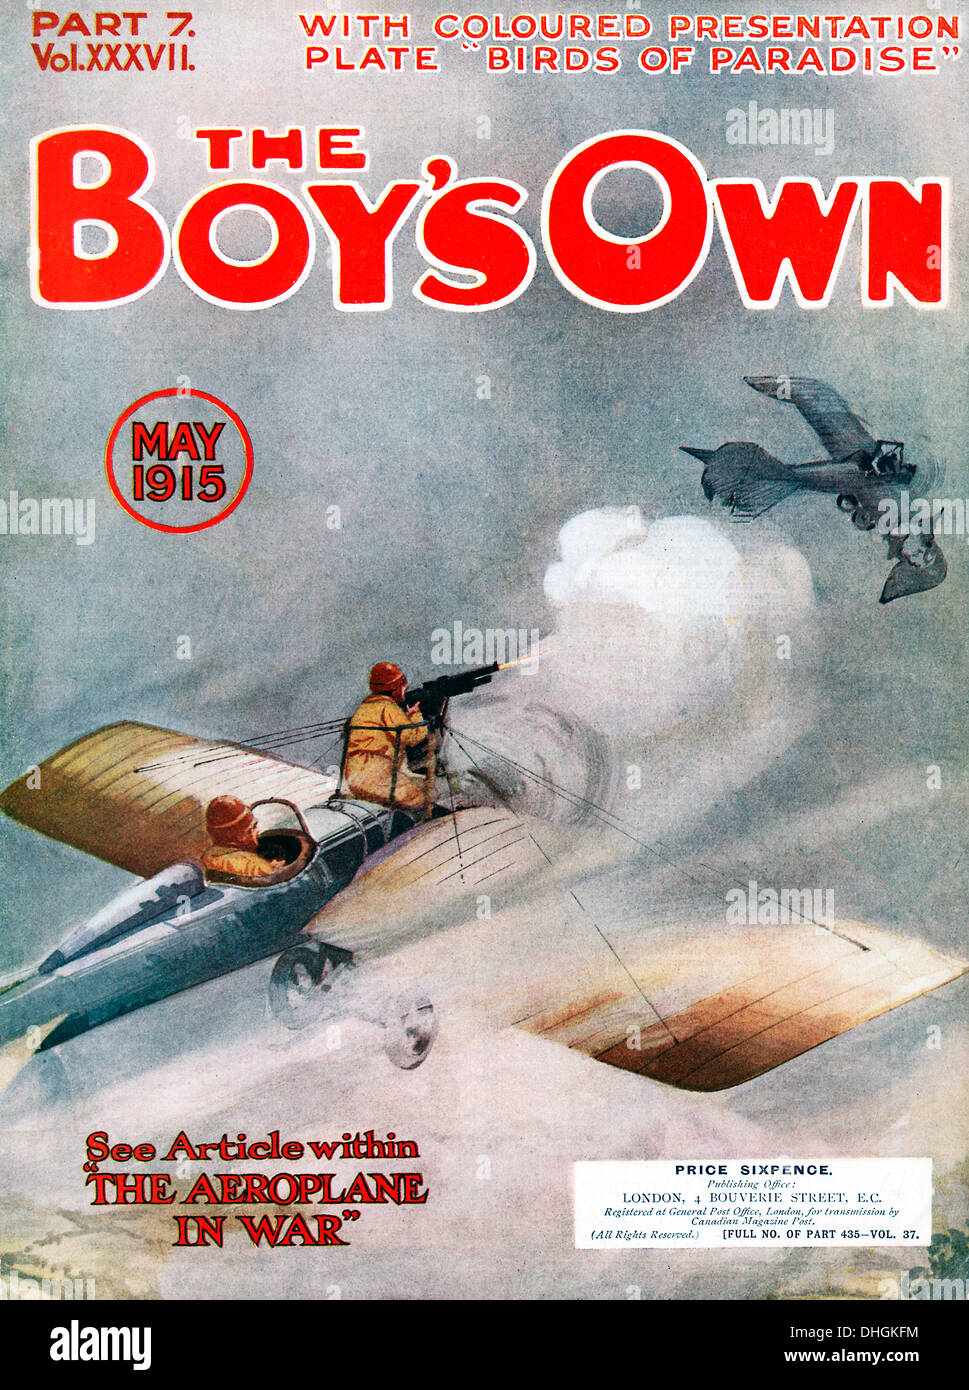 Les garçons propre papier, le combat aérien, 1915 Couverture du magazine avec une question sur l'avion à la guerre - la guerre très tôt dans l'air Banque D'Images